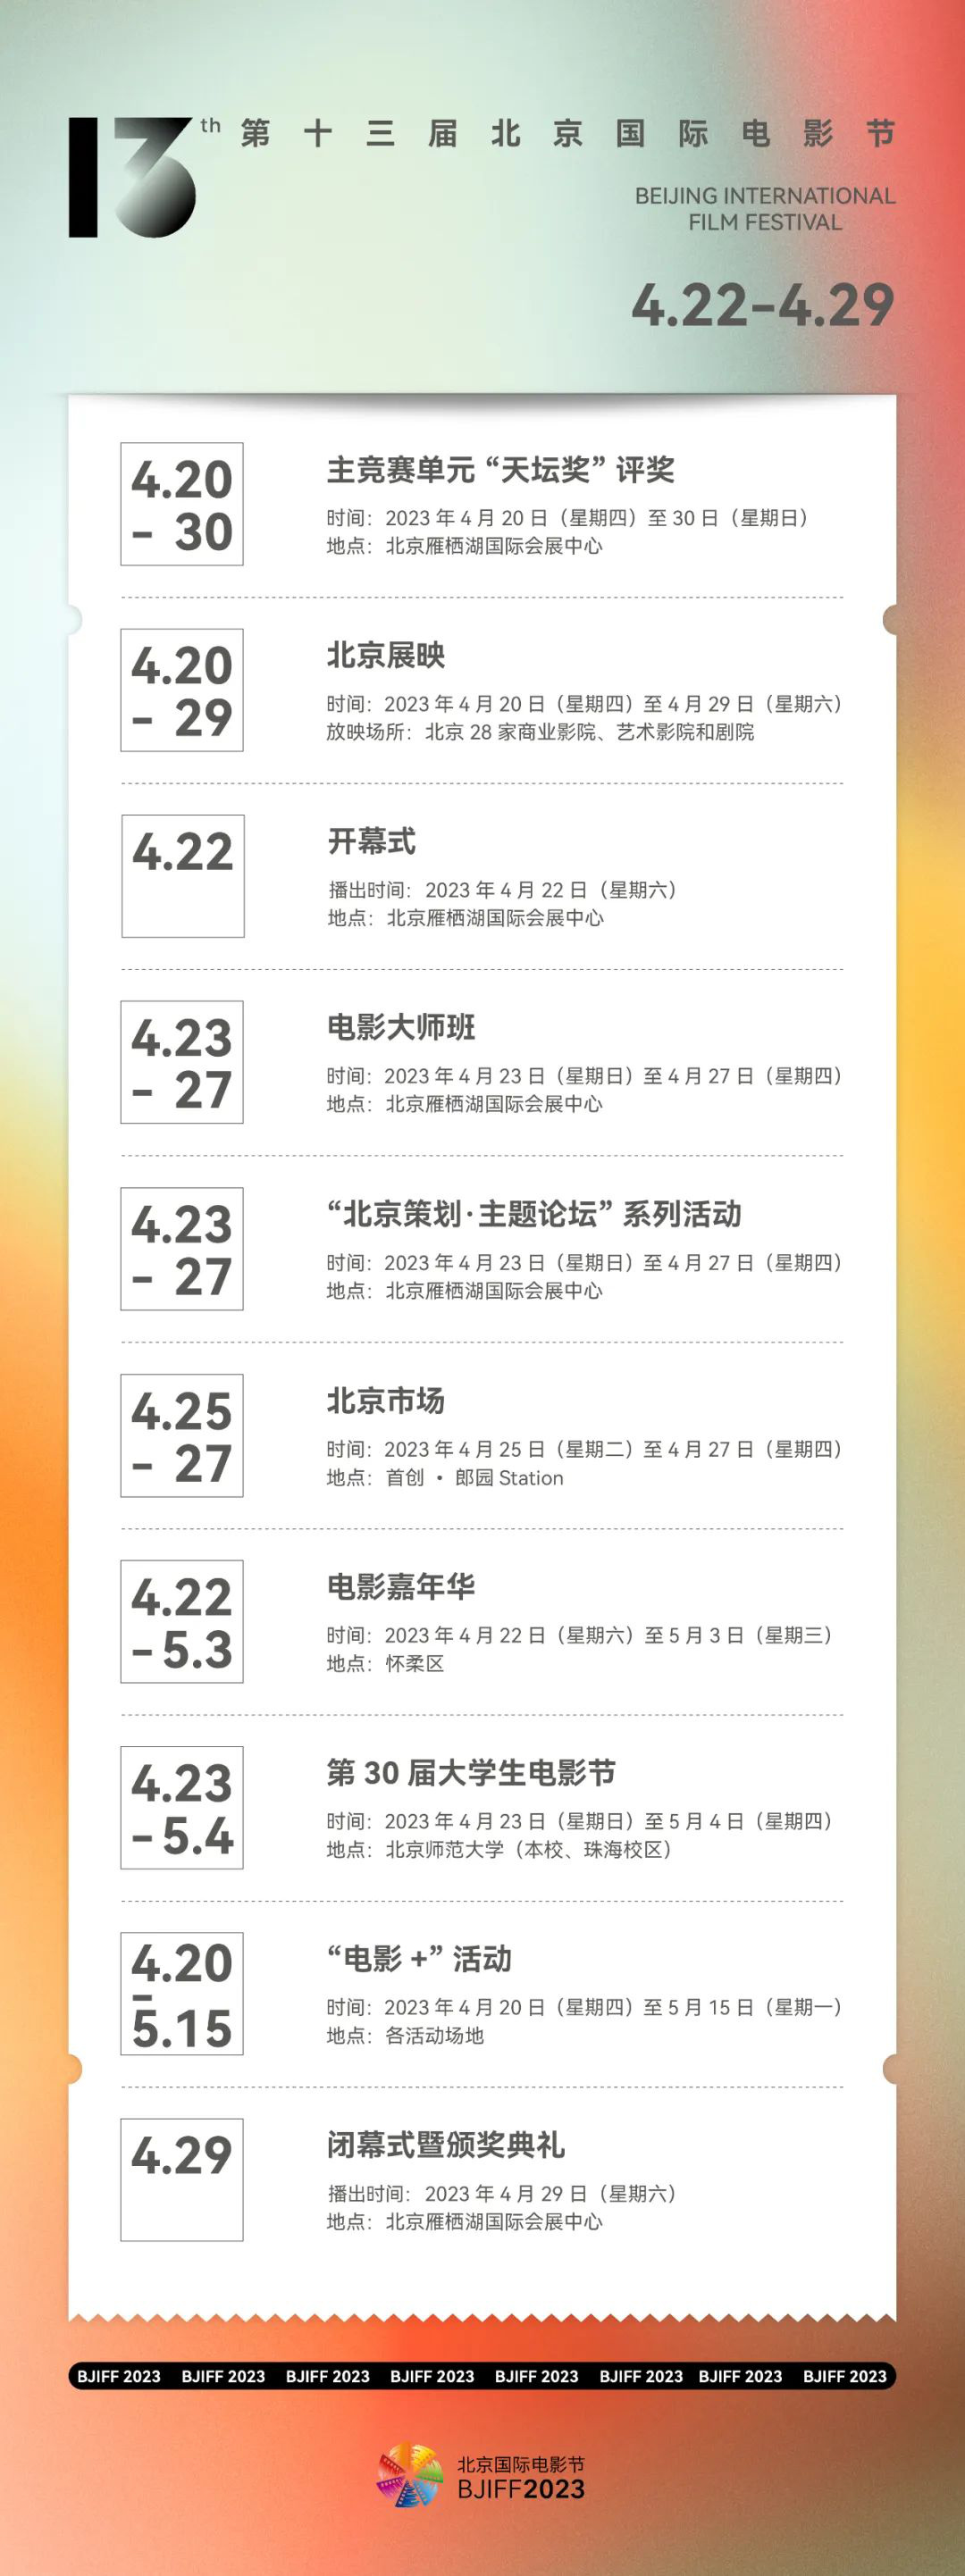 第十三届北京国际电影节将于4.22—4.29正式举办